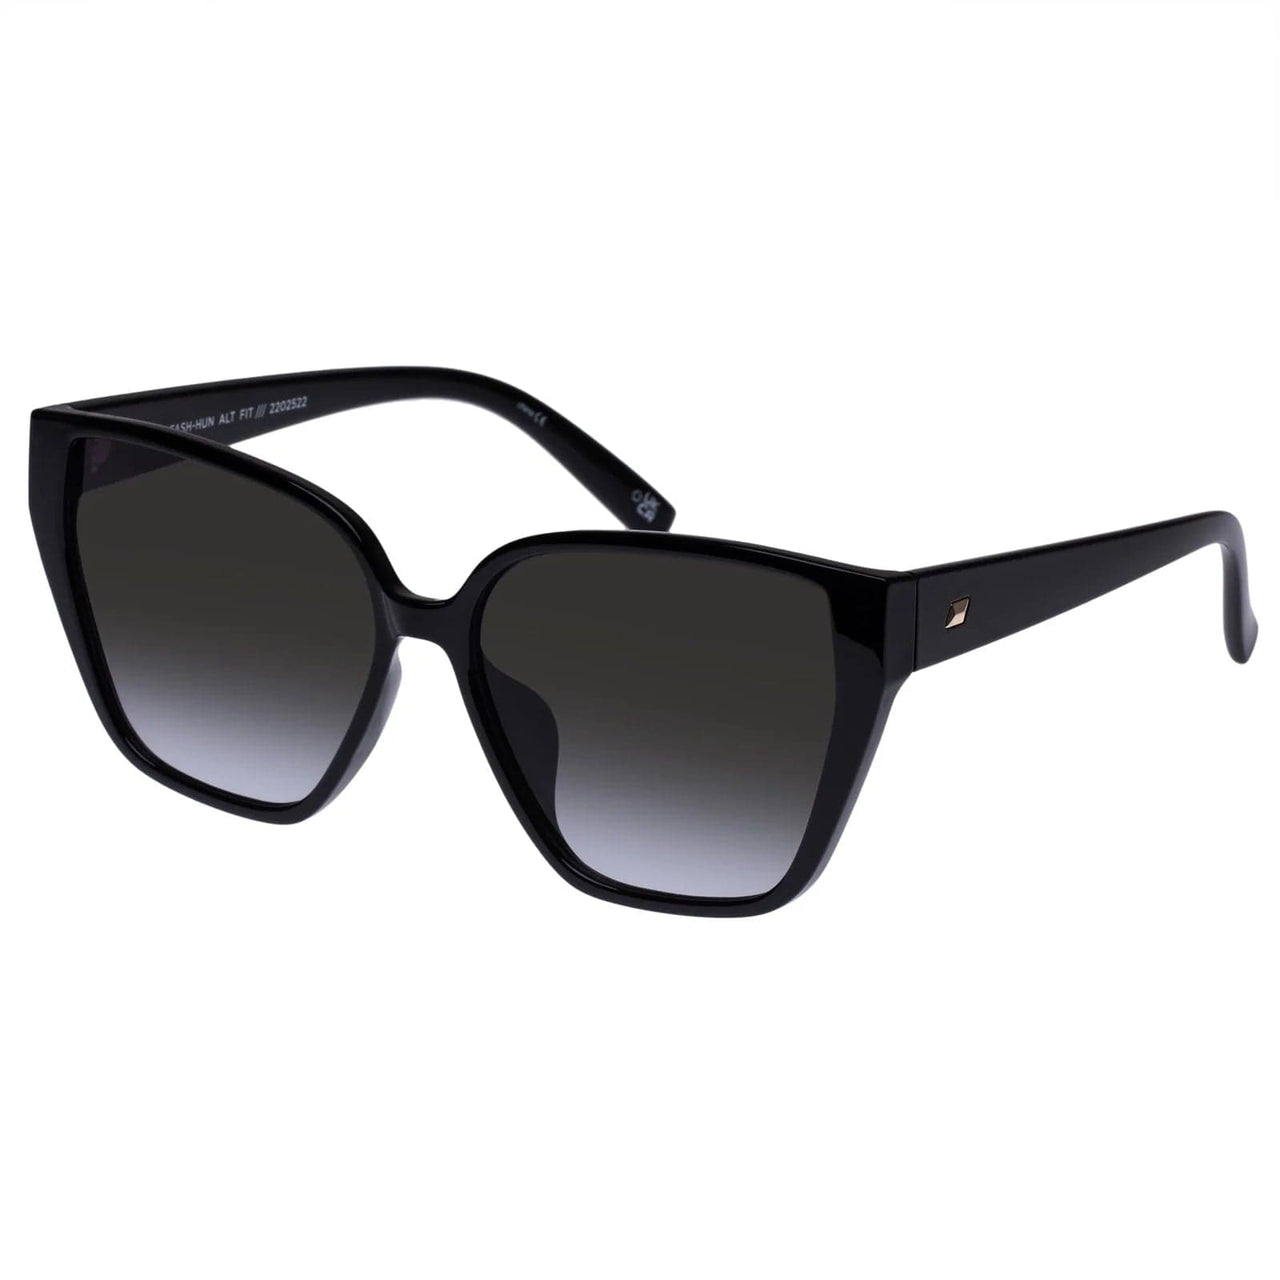 Fash-Hun Sunglasses Shiny Black, Sunglasses by Le Spec | LIT Boutique